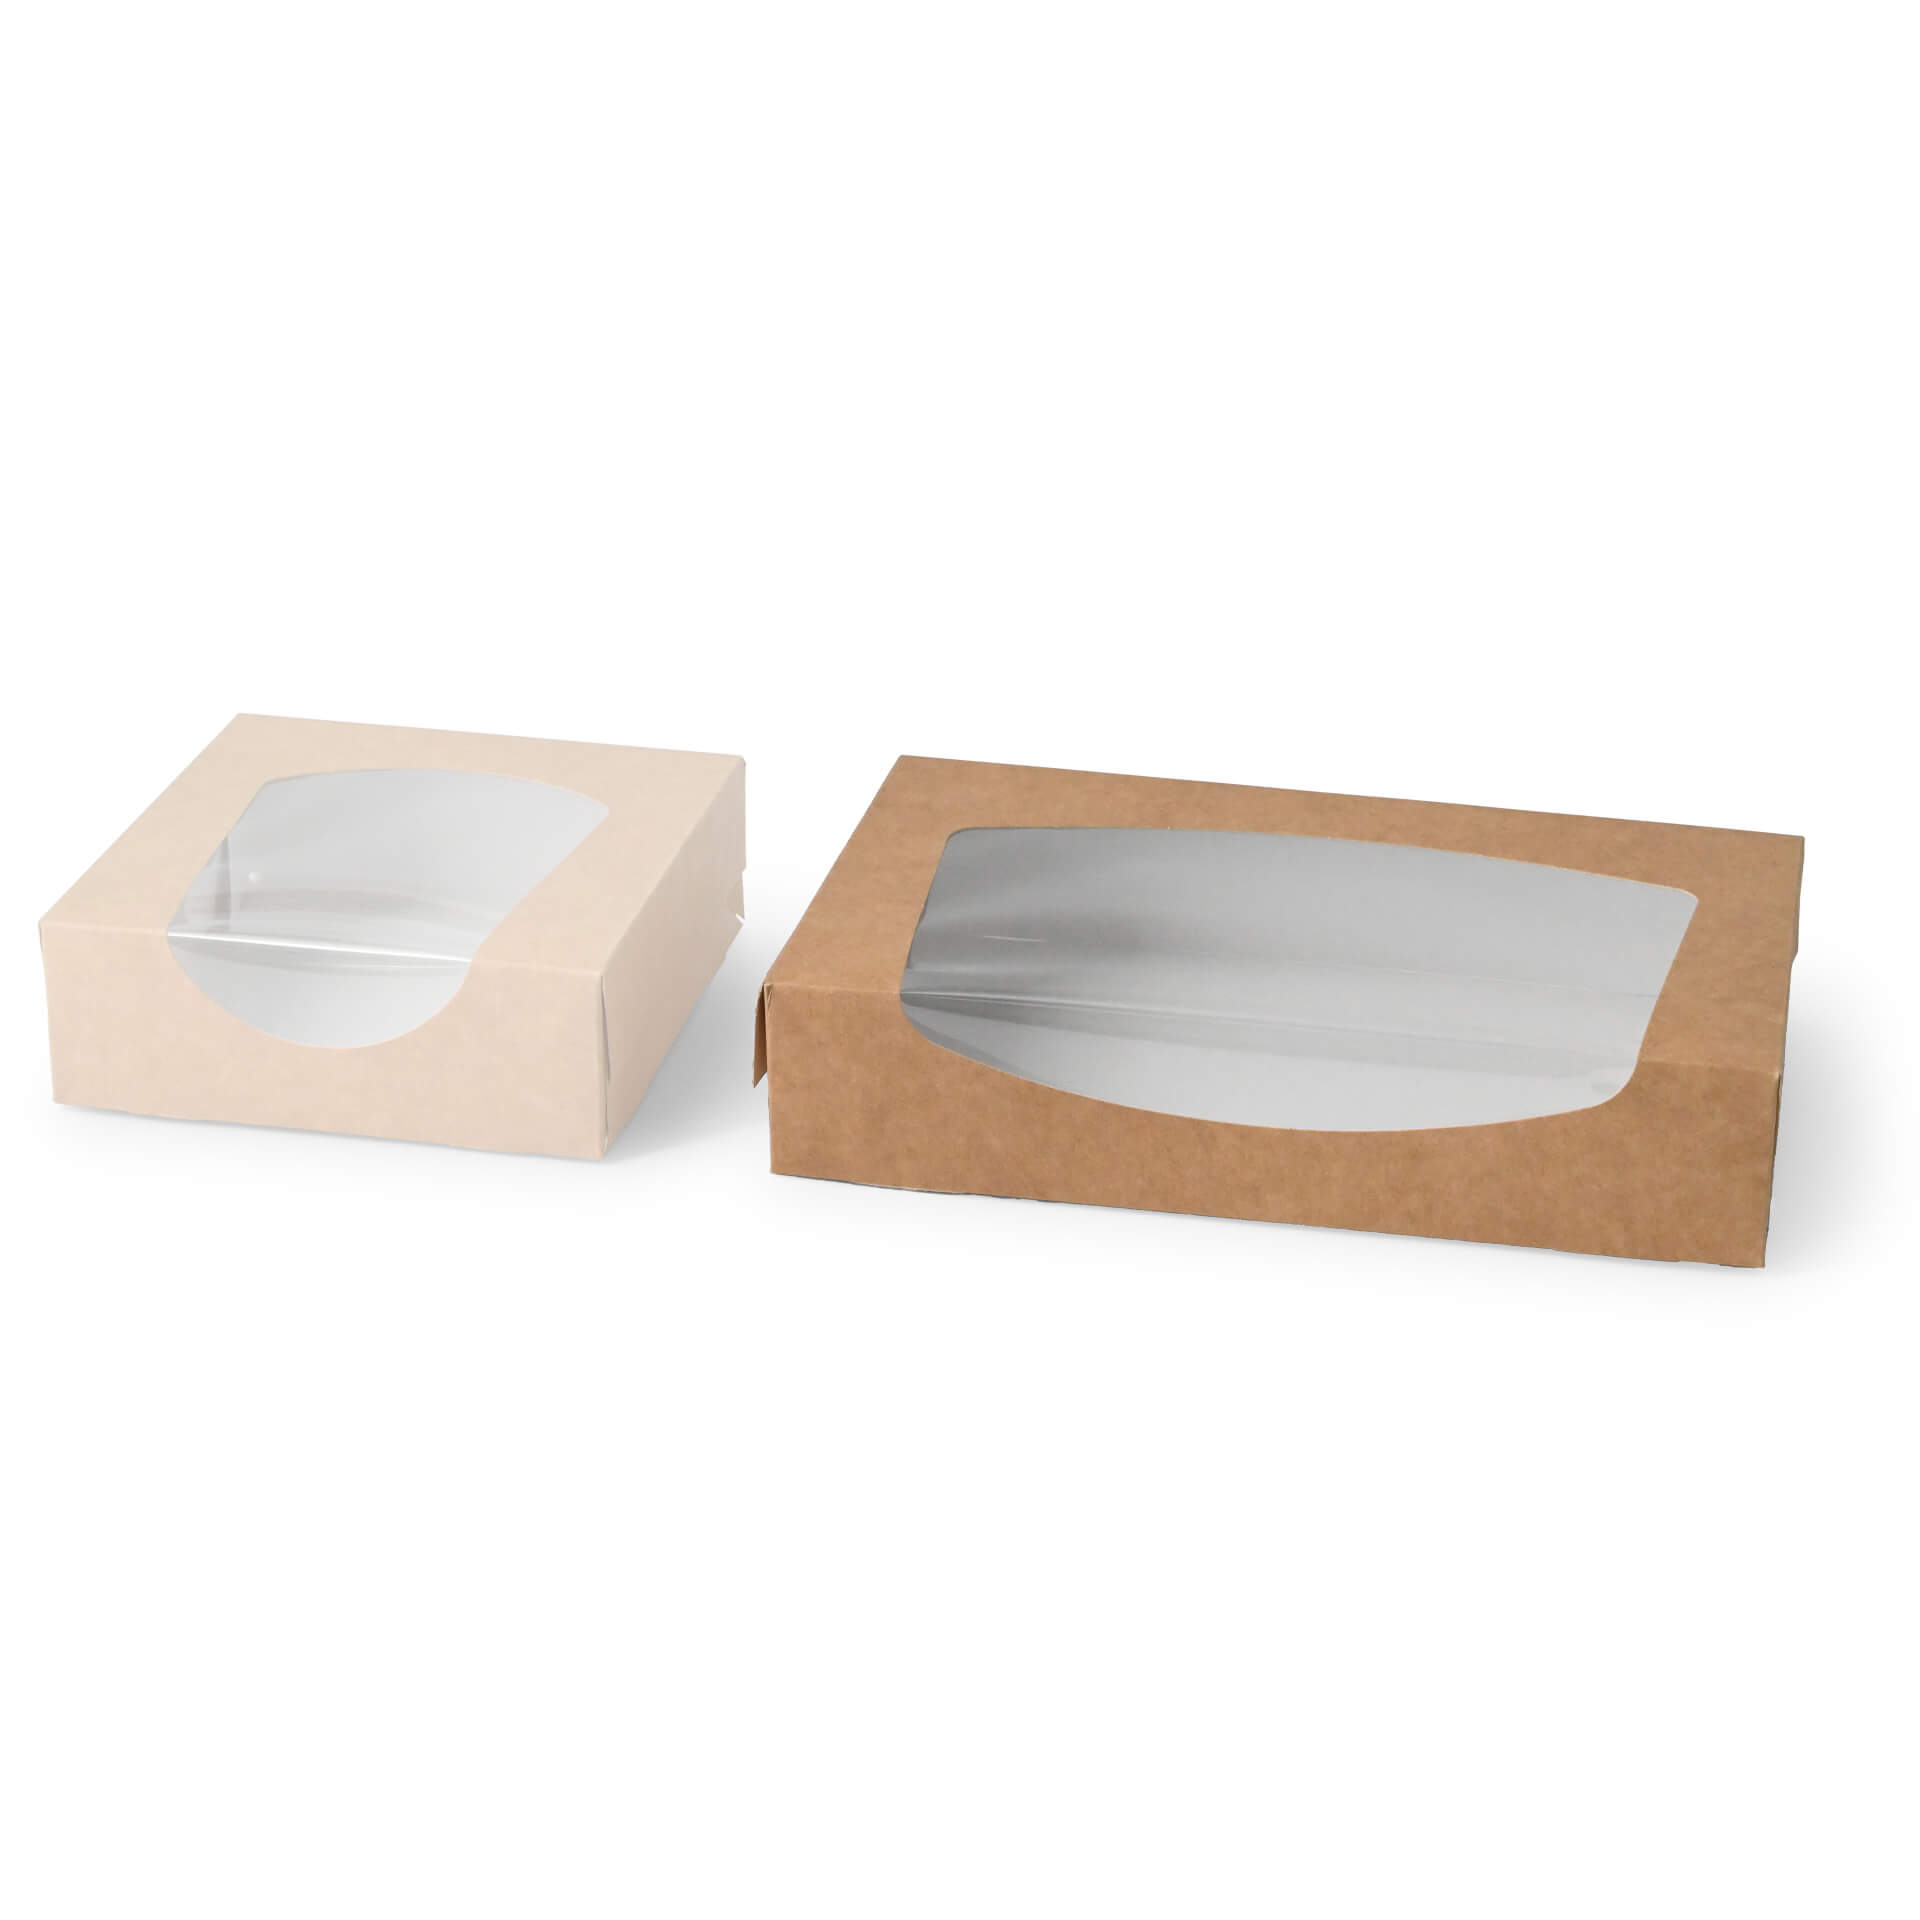 Karton-Sichtfenster-Schachteln 20 x 12 x 4 cm, 900 ml, Zellulose-Fenster, außen braun, innen weiß, faltbar